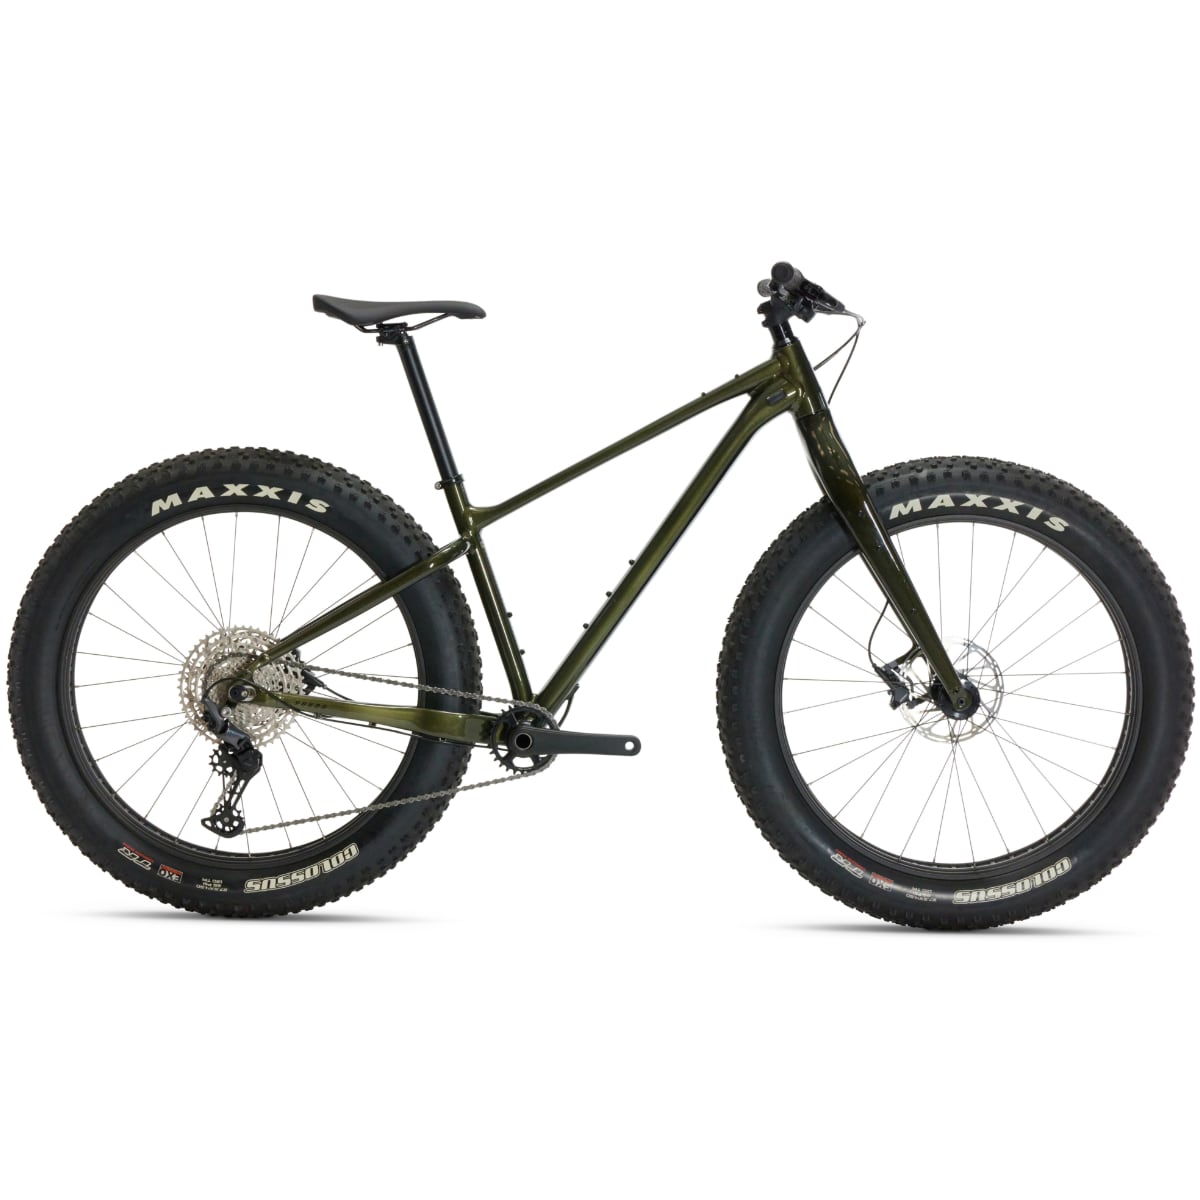 نکته خرید - قیمت روز دوچرخه کوهستان جاینت مدل Yukon 2 سایز 27.5 خرید